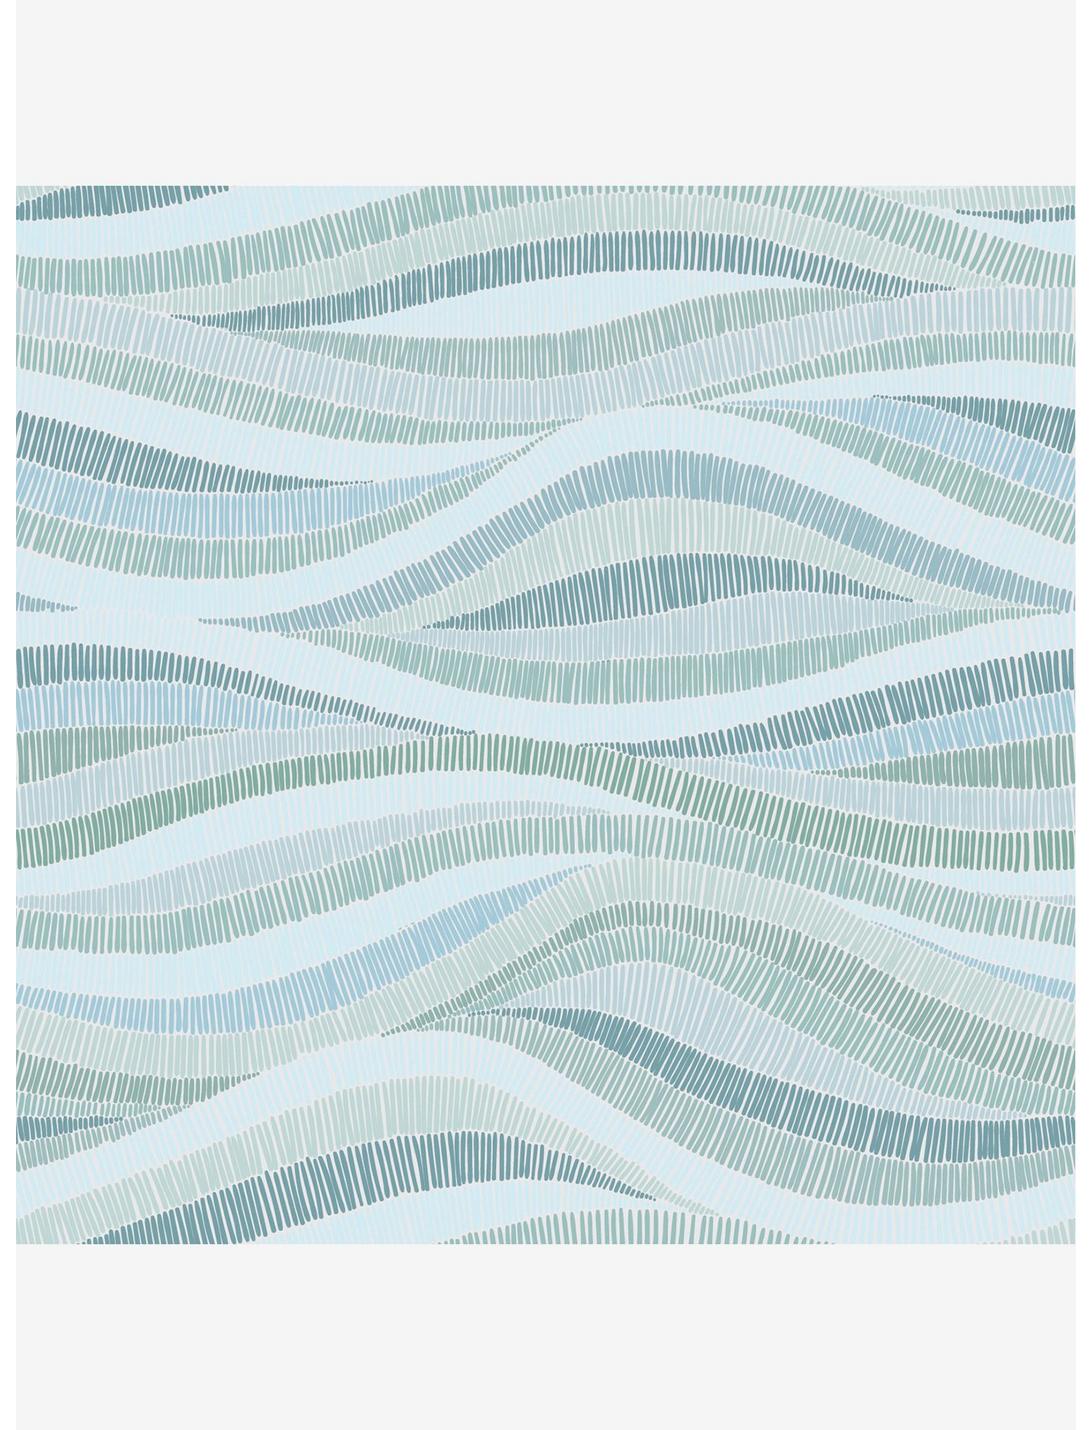 Mosaic Waves Peel & Stick Wallpaper, , hi-res